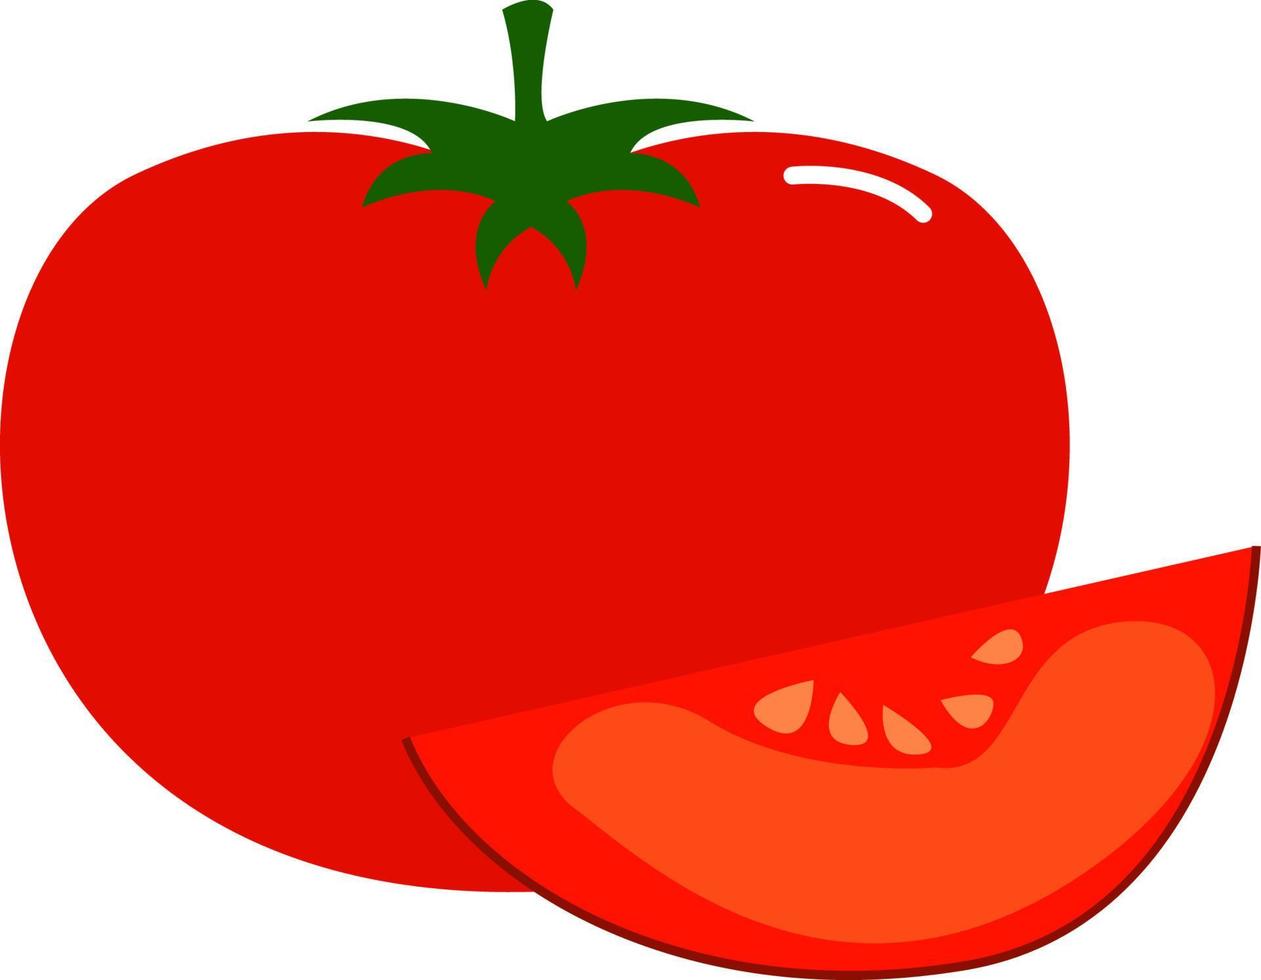 tranche de tomates, illustration, vecteur sur fond blanc.